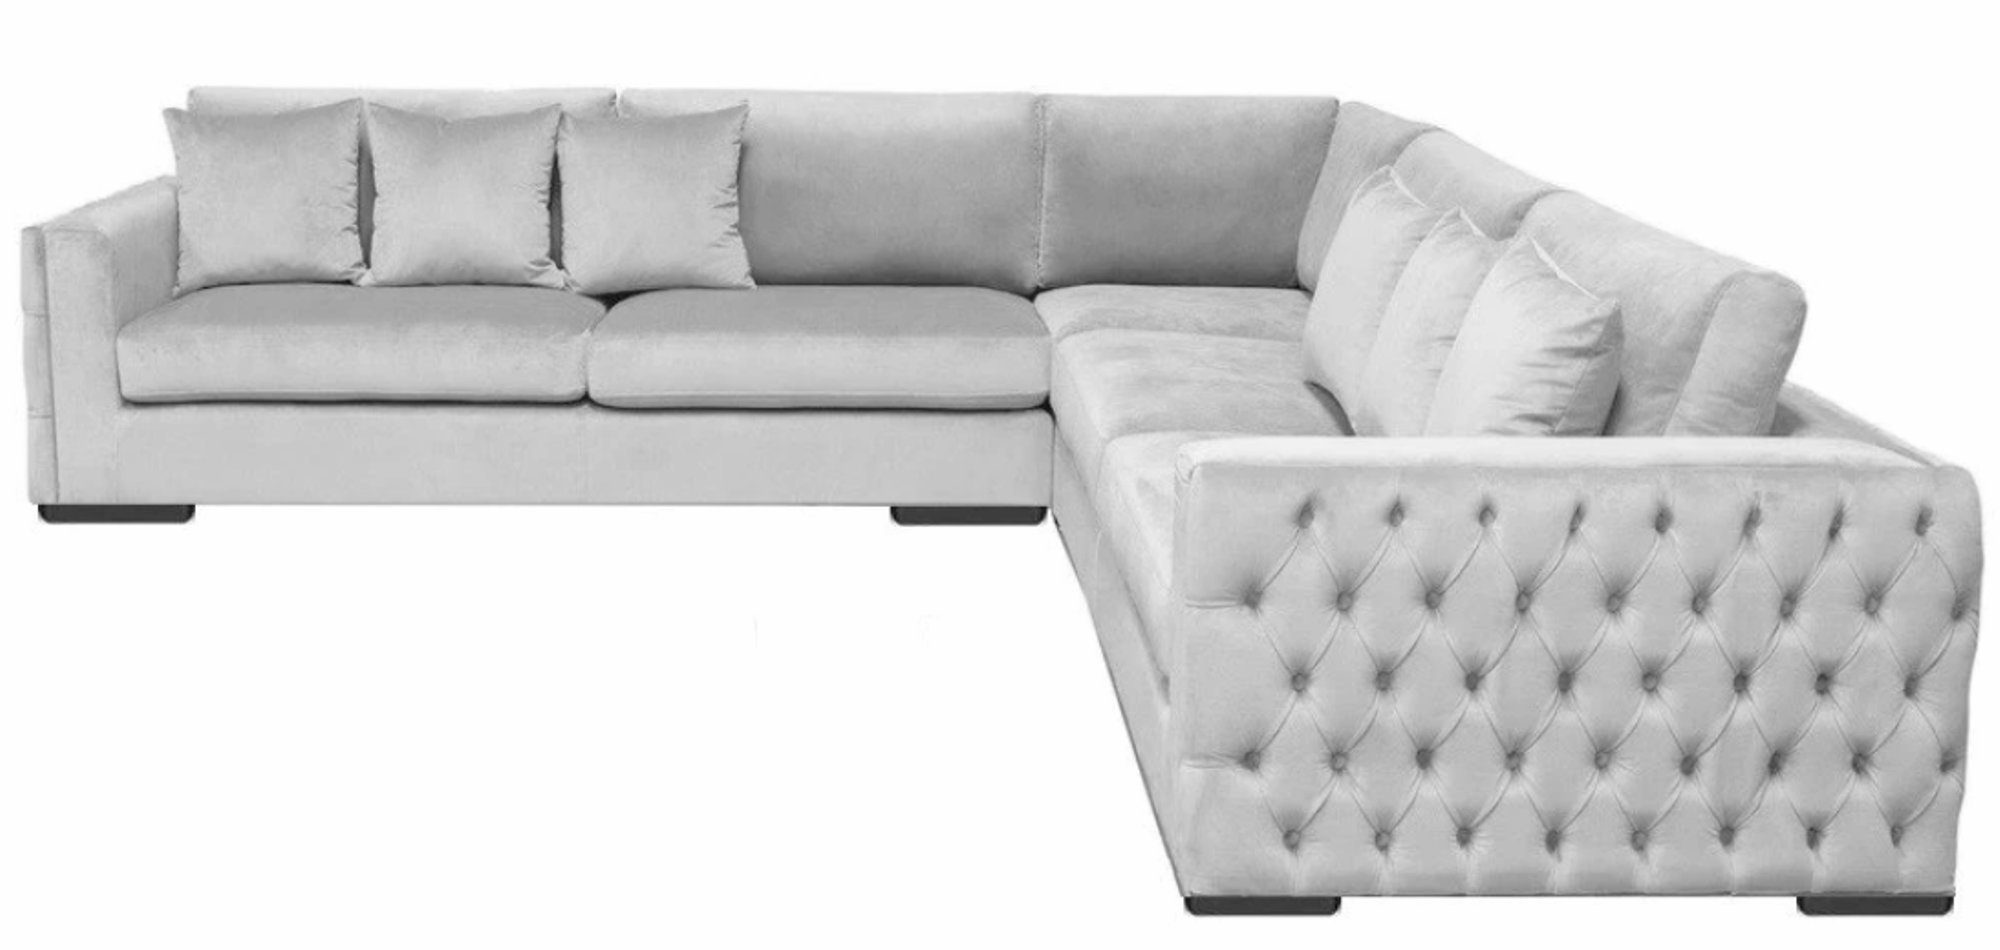 JVmoebel Ecksofa Luxus Silber Ecksofa moderne L-Form Couch Polstermöbel Neu, Made in Europe | Ecksofas